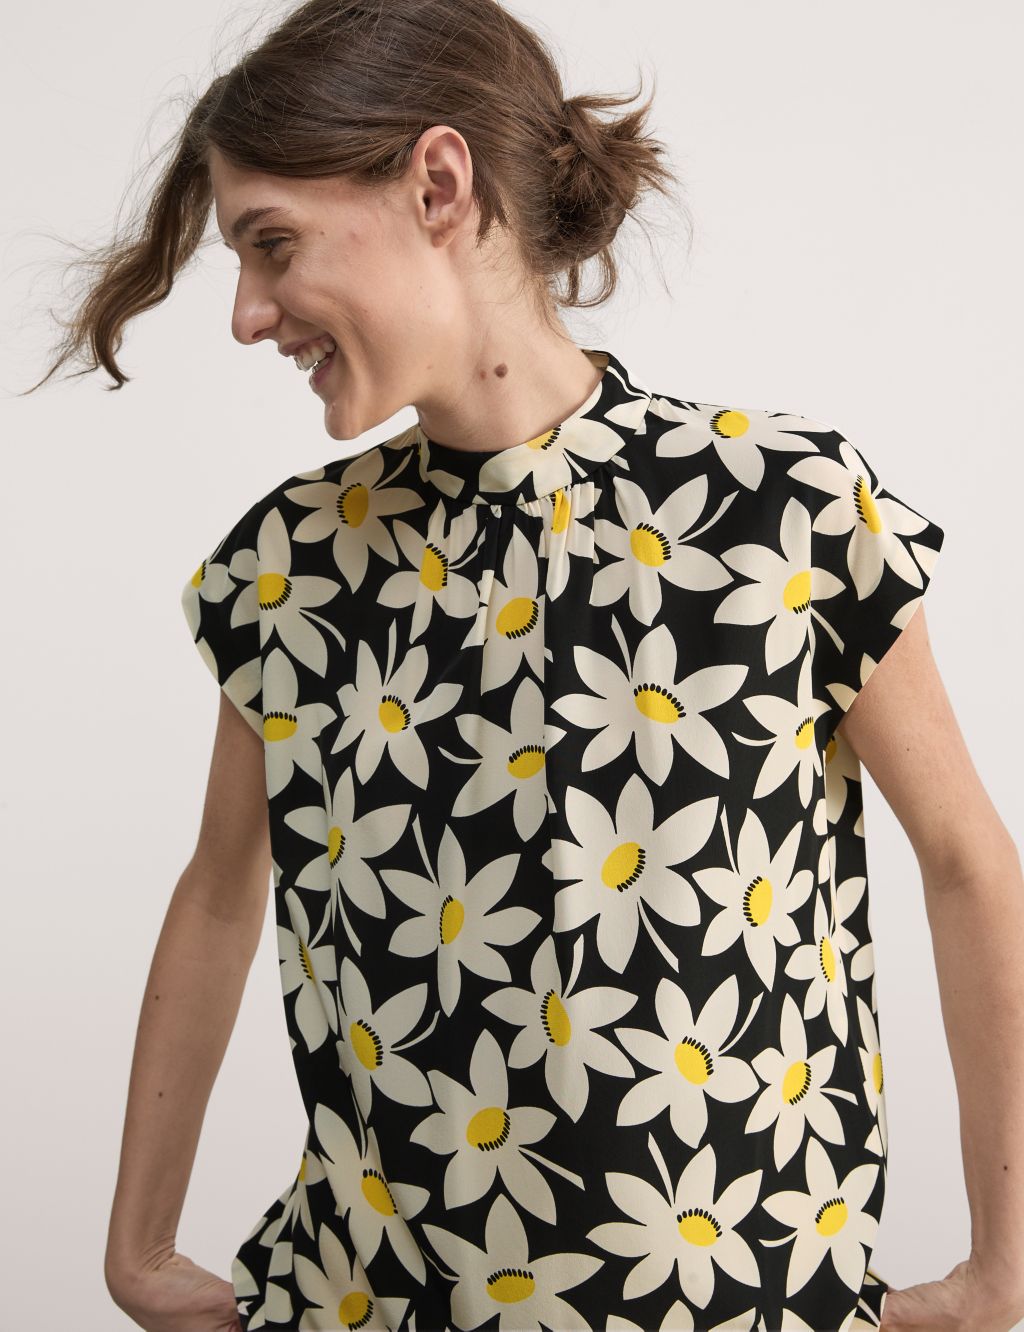 Crew-neck floral print blouse, golden flowers - Plus Size. Colour